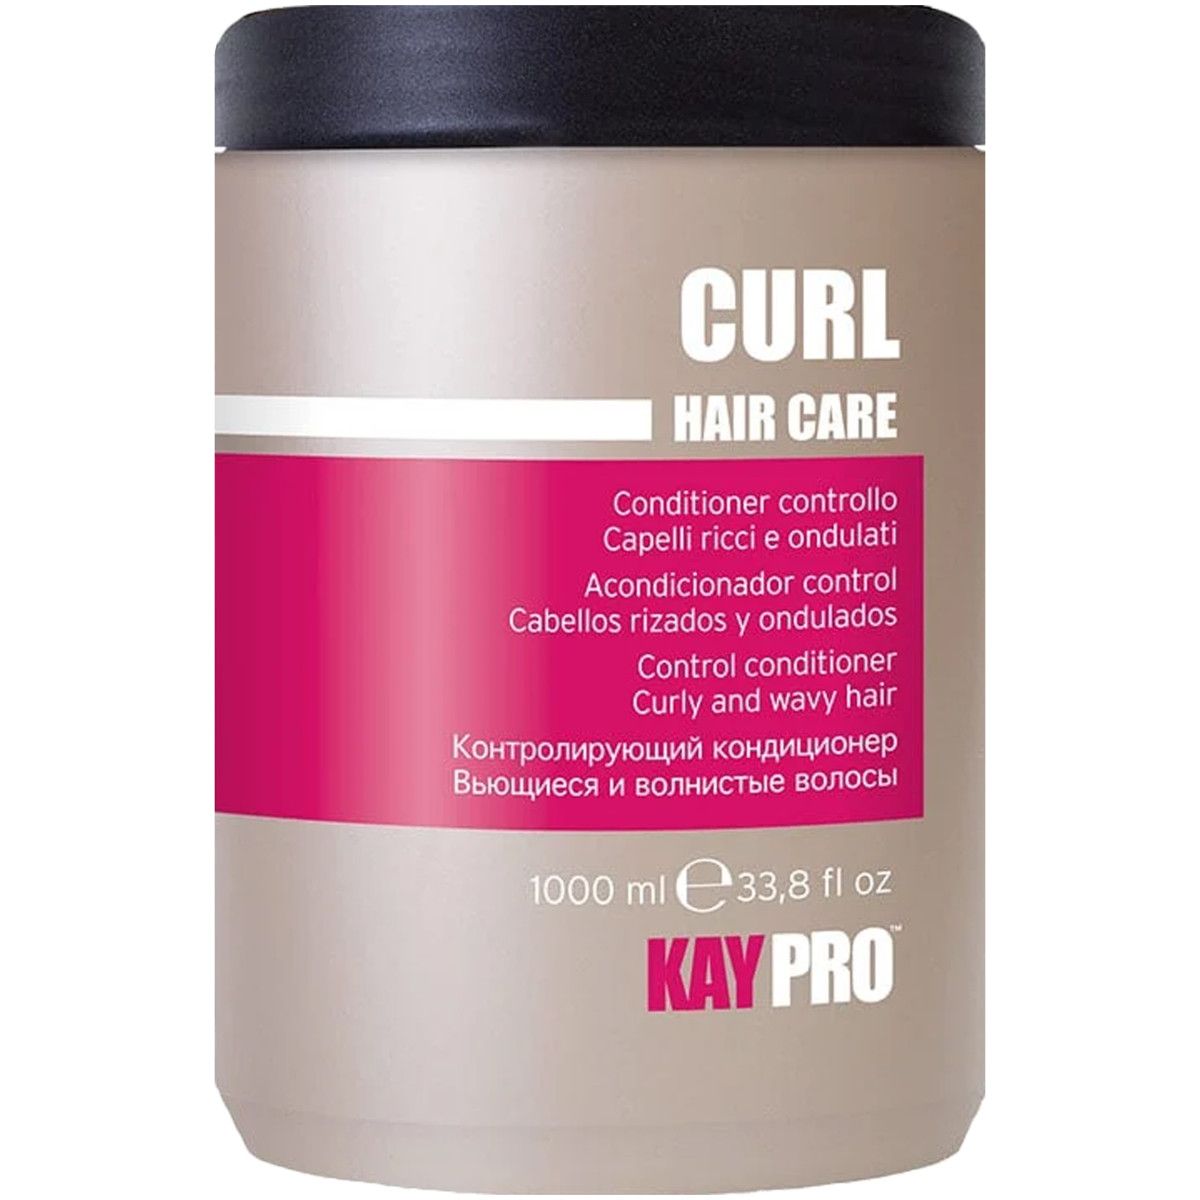 KayPro Curl Hair Care - odżywka do włosów kręconych, 1000ml